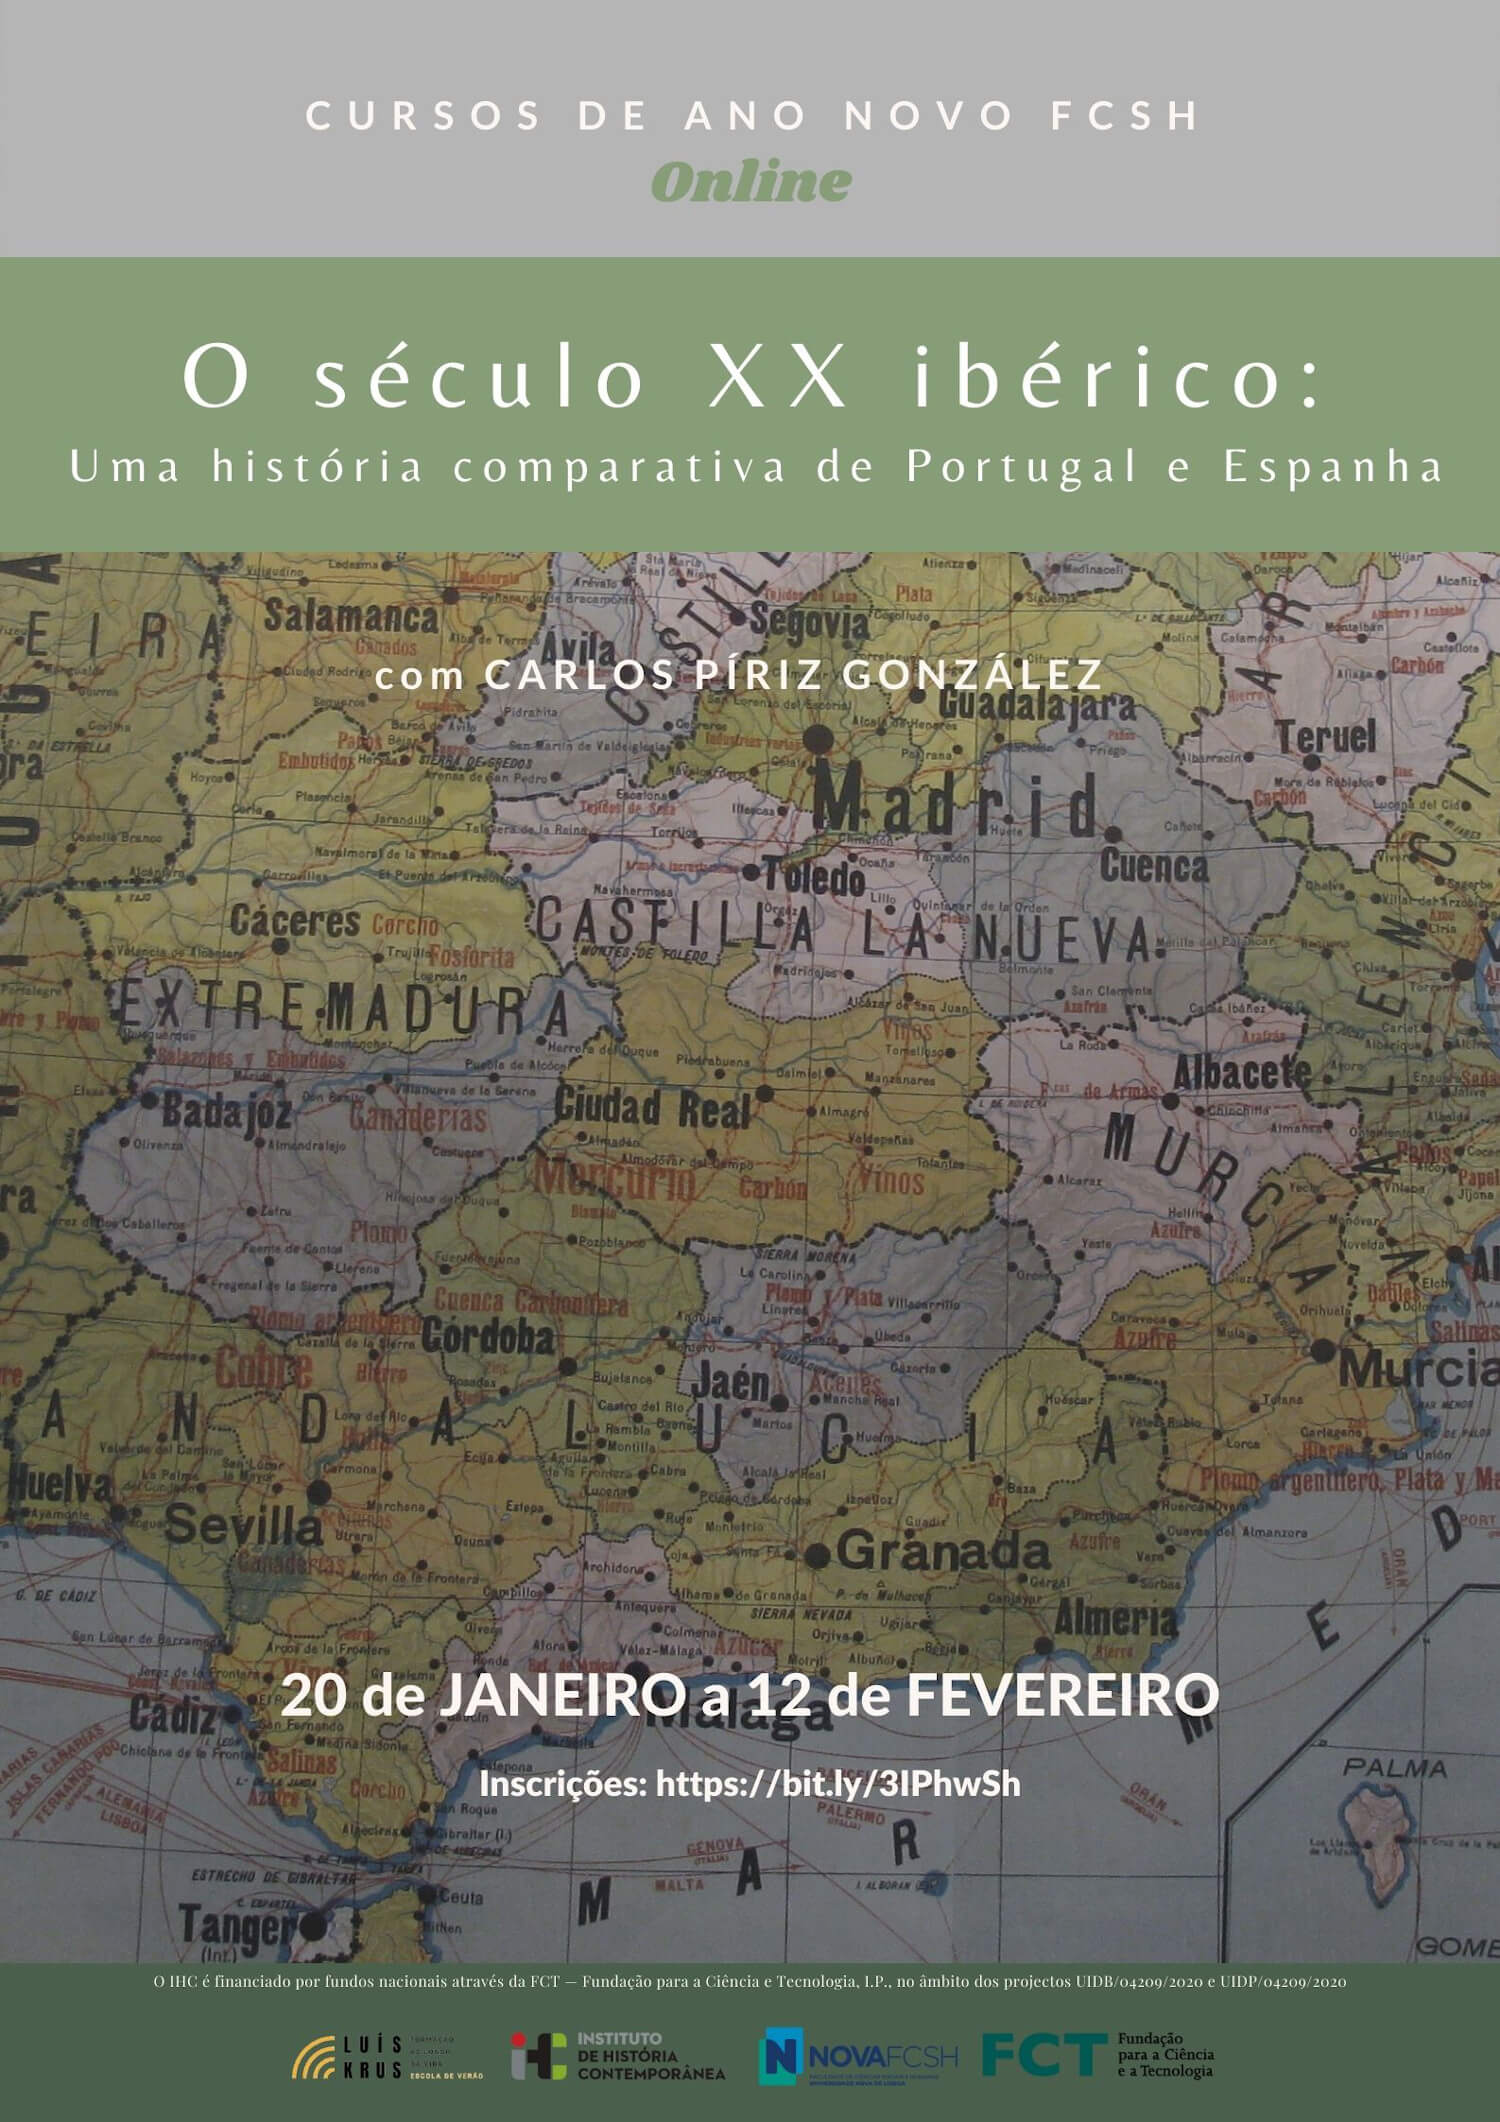 Cartaz do curso "O século XX ibérico: uma história comparativa de Portugal e Espanha" da edição 2022 dos Cursos de Ano Novo da NOVA FCSH